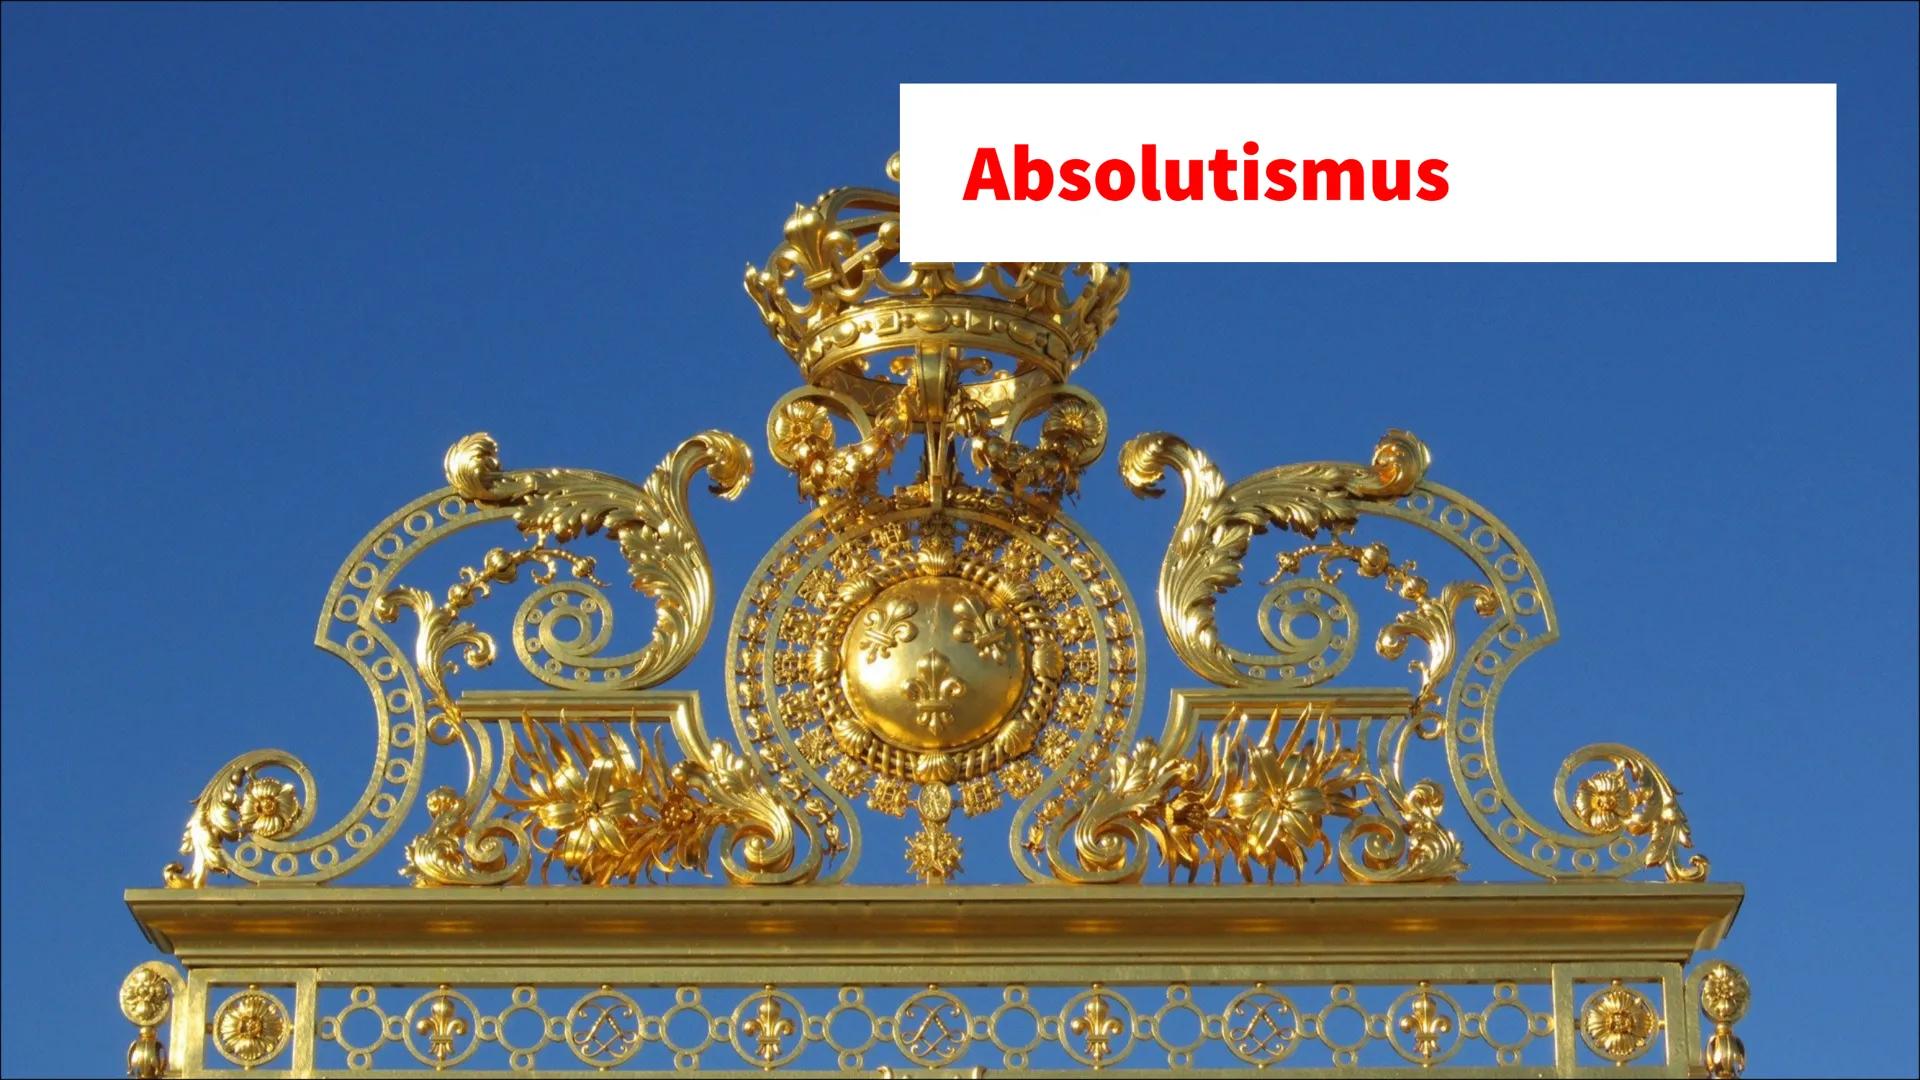 Absolutismus
✓ Begriffserklärung
Absolutismus bezeichnet sowohl eine Zeitepoche, als auch eine Regierungsform. Als
Herrschaftsform ist sie e